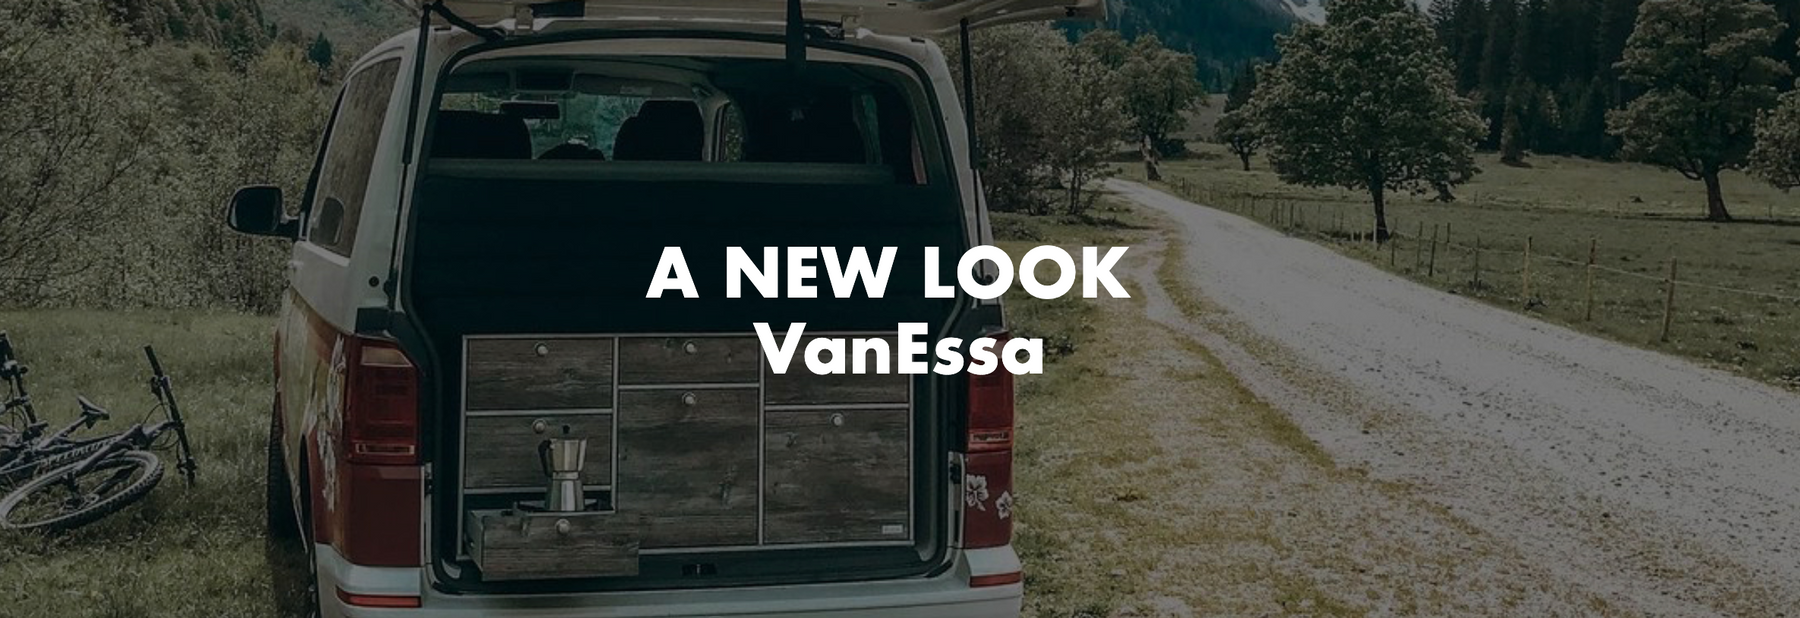 A new look VanEssa